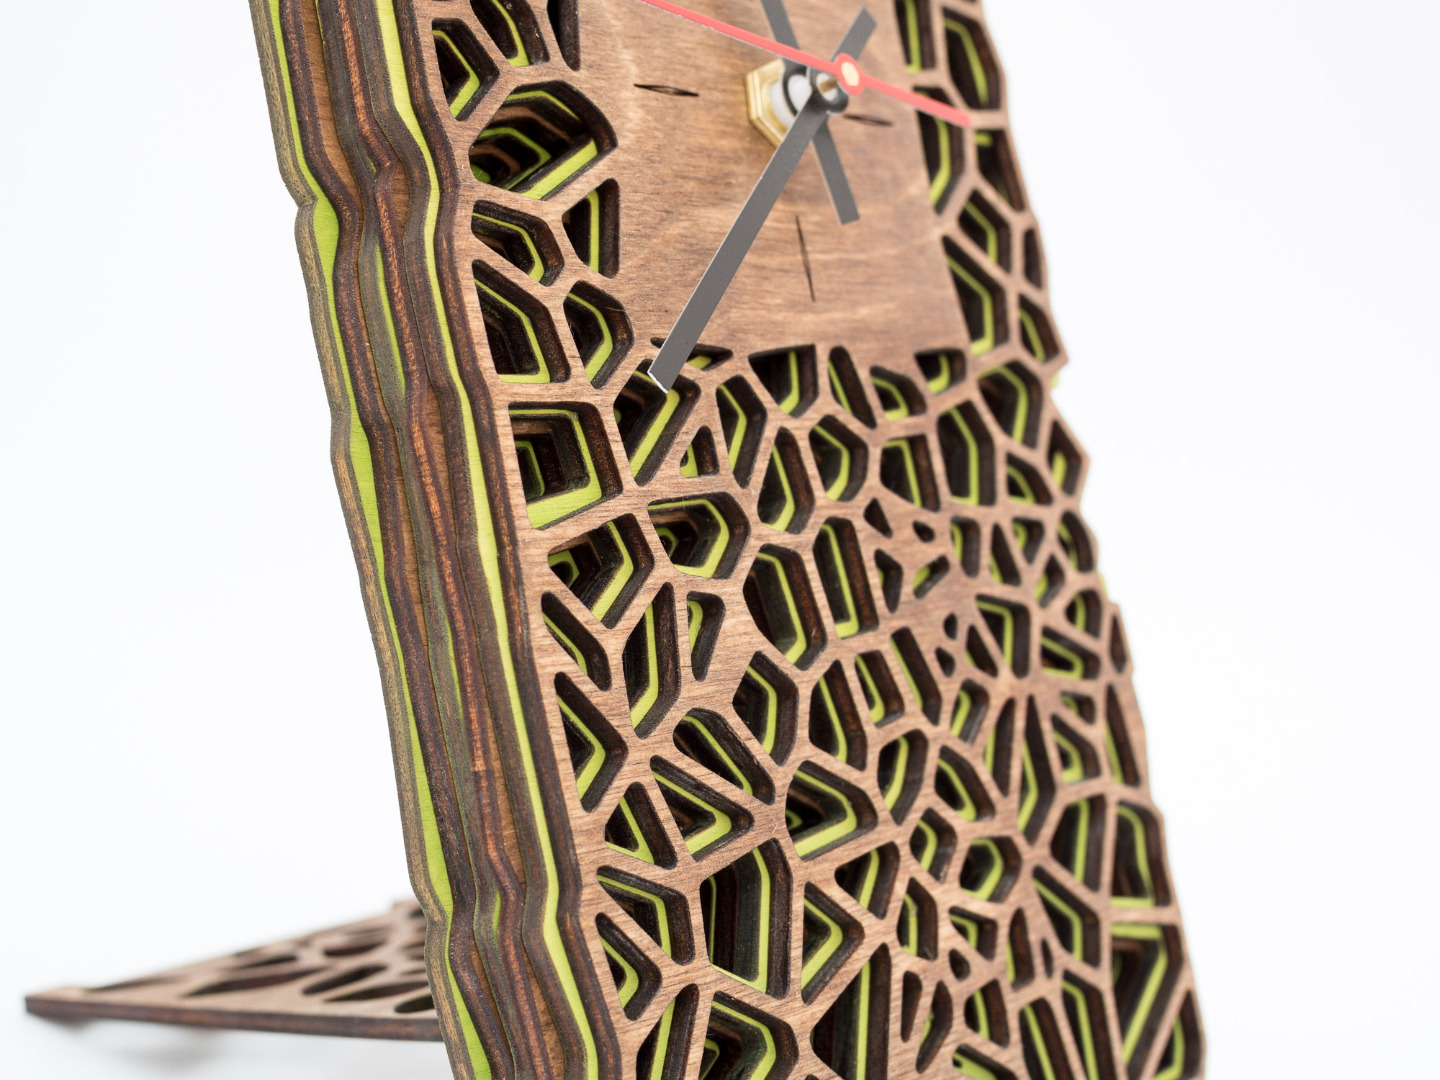 Uhr aus Holz für Schreibtisch oder Wand - Organisches Zweifarbiges Design in Walnuss und Maigrün 7